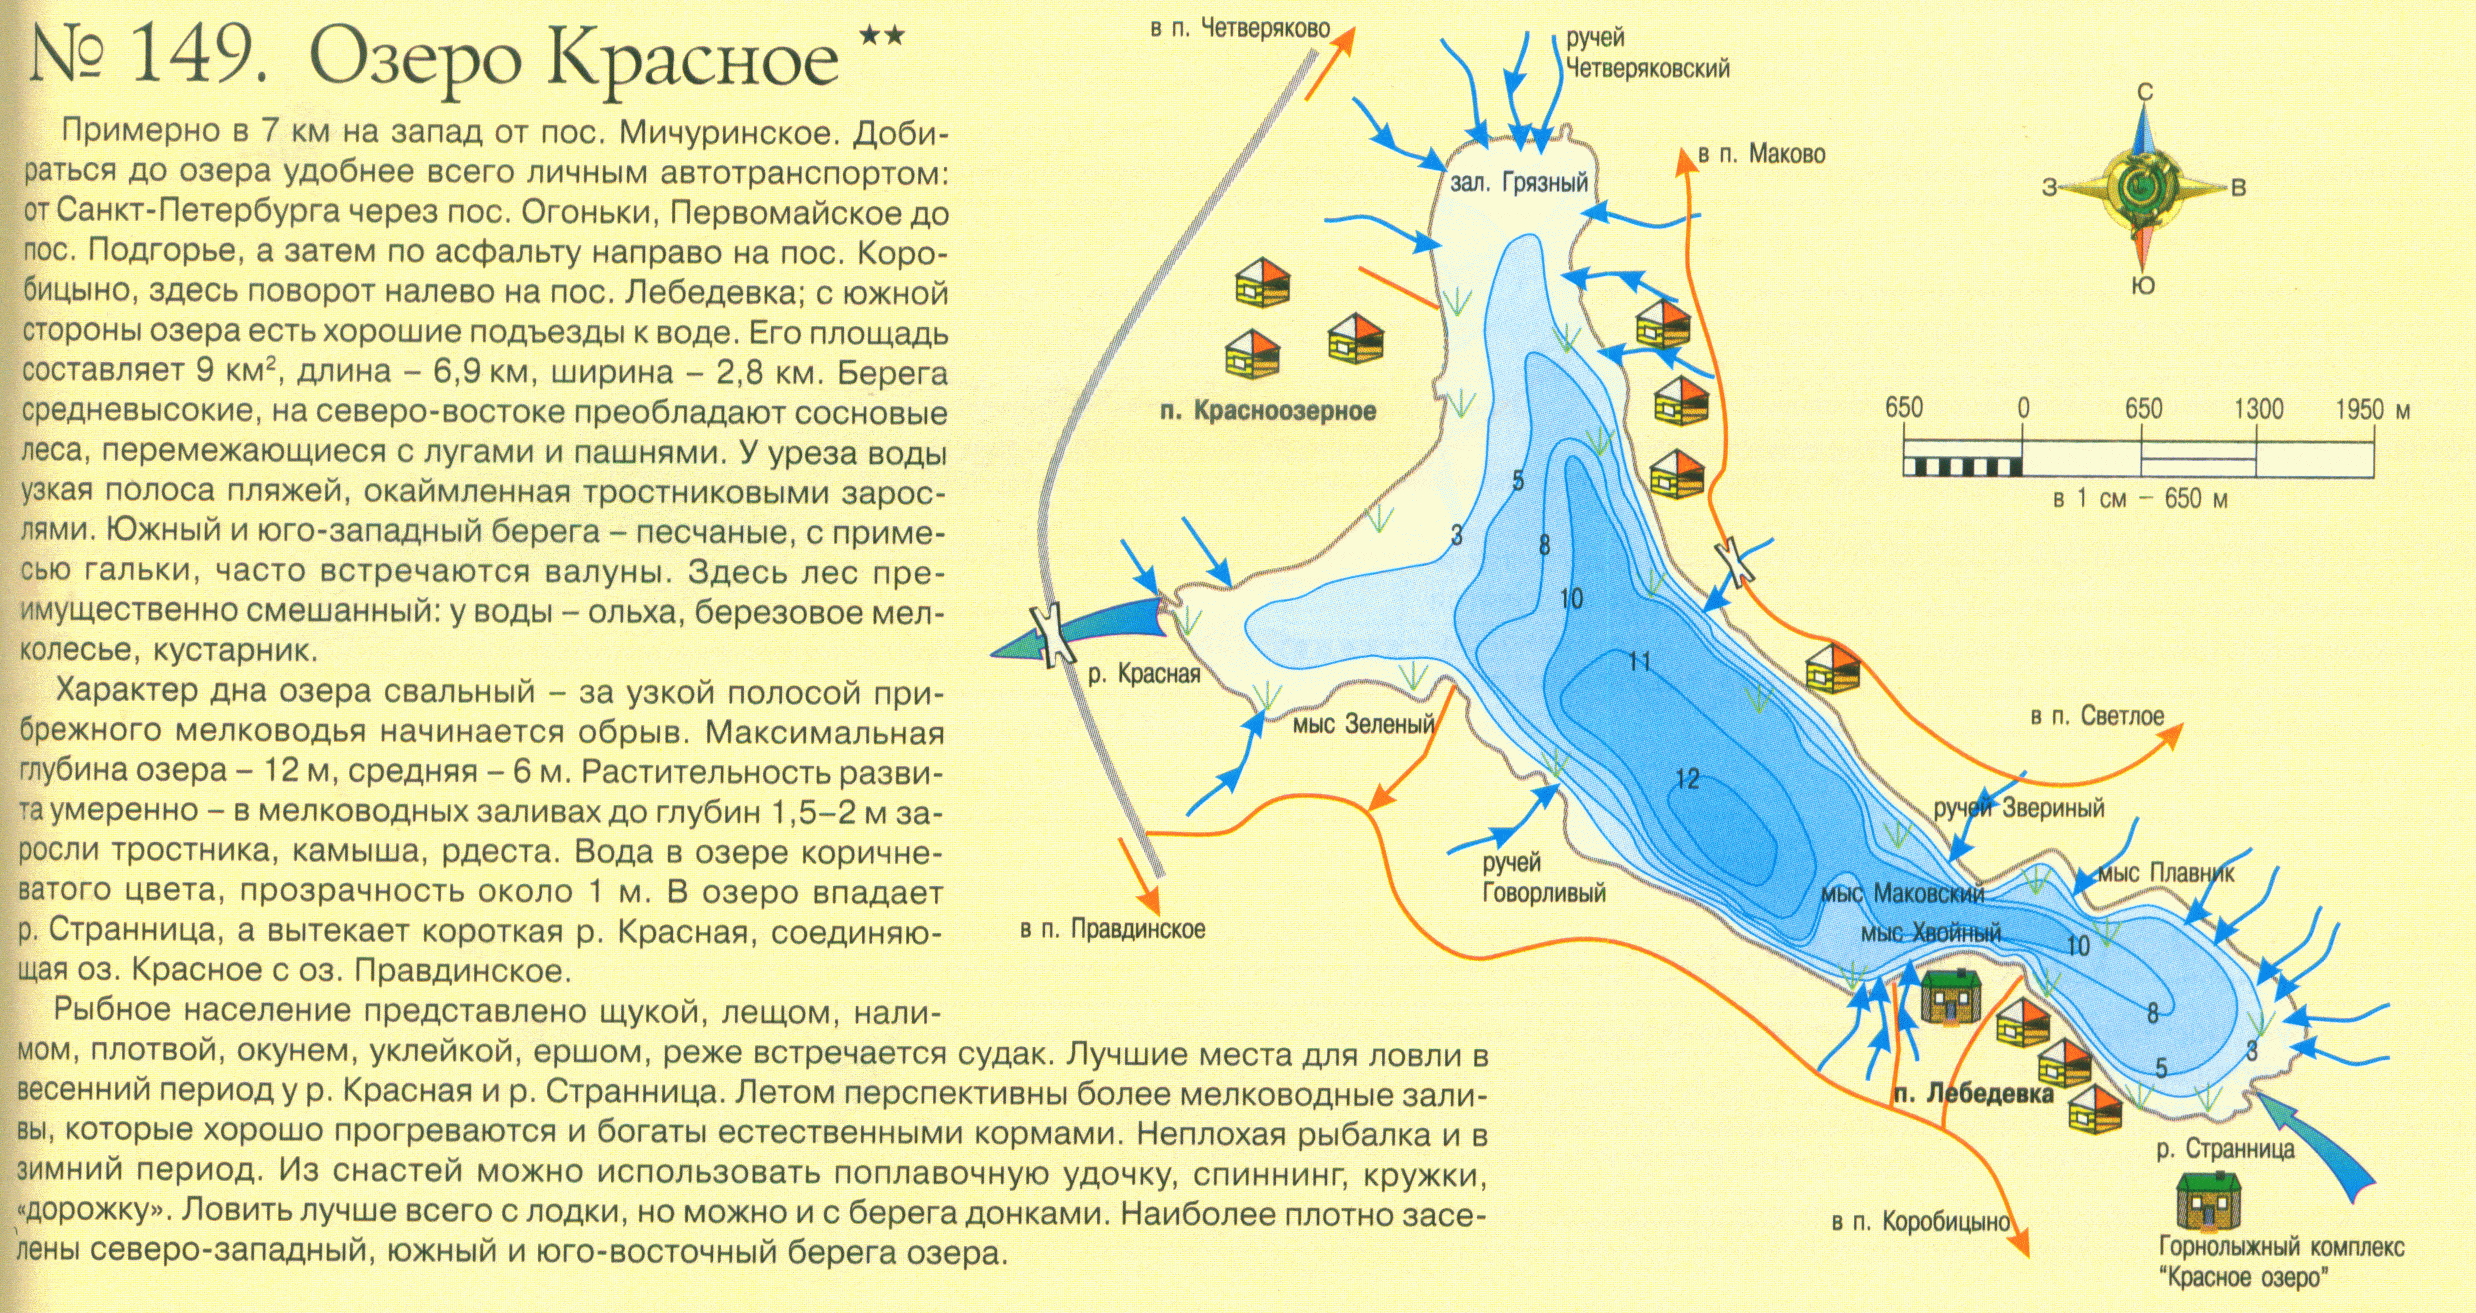 Глубина озера хорошего. Карта глубин озеро красное Ленинградская область. Карта глубин красного озера лен обл. Озеро красное карта глубин. Карта глубин оз красное.